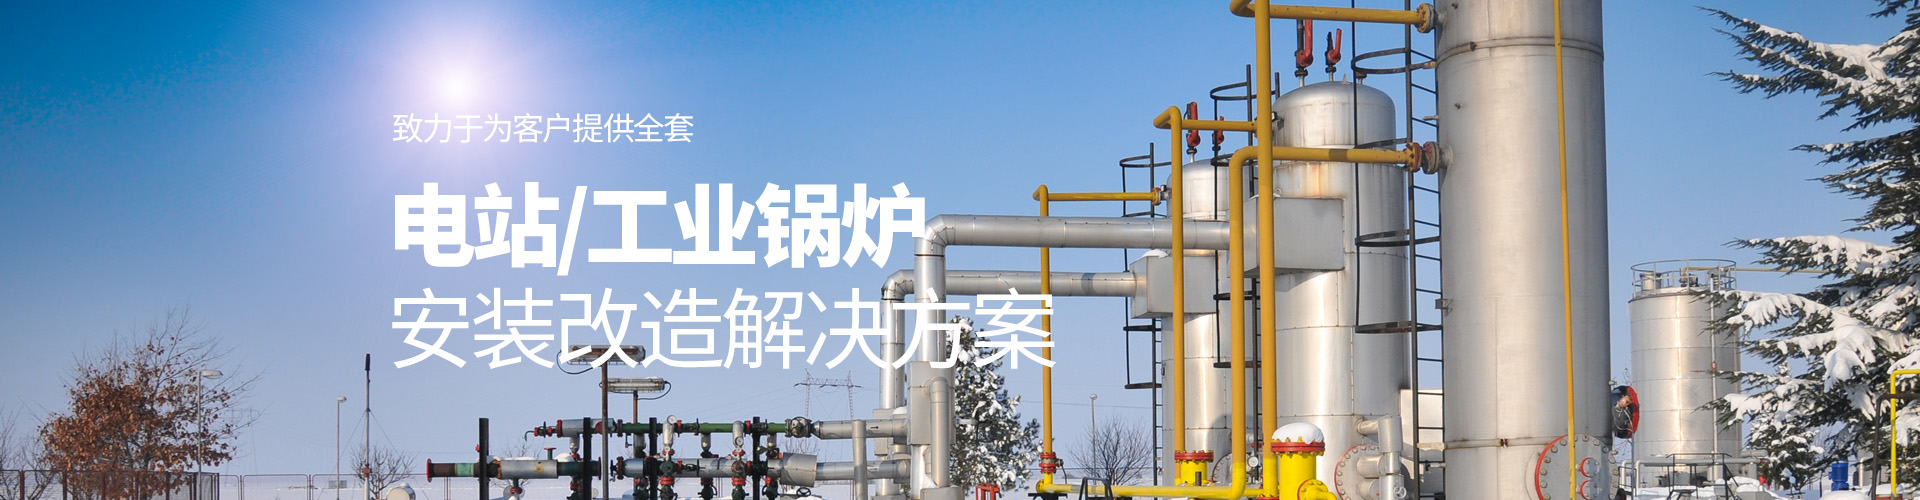 安阳市东风锅炉安装有限责任公司